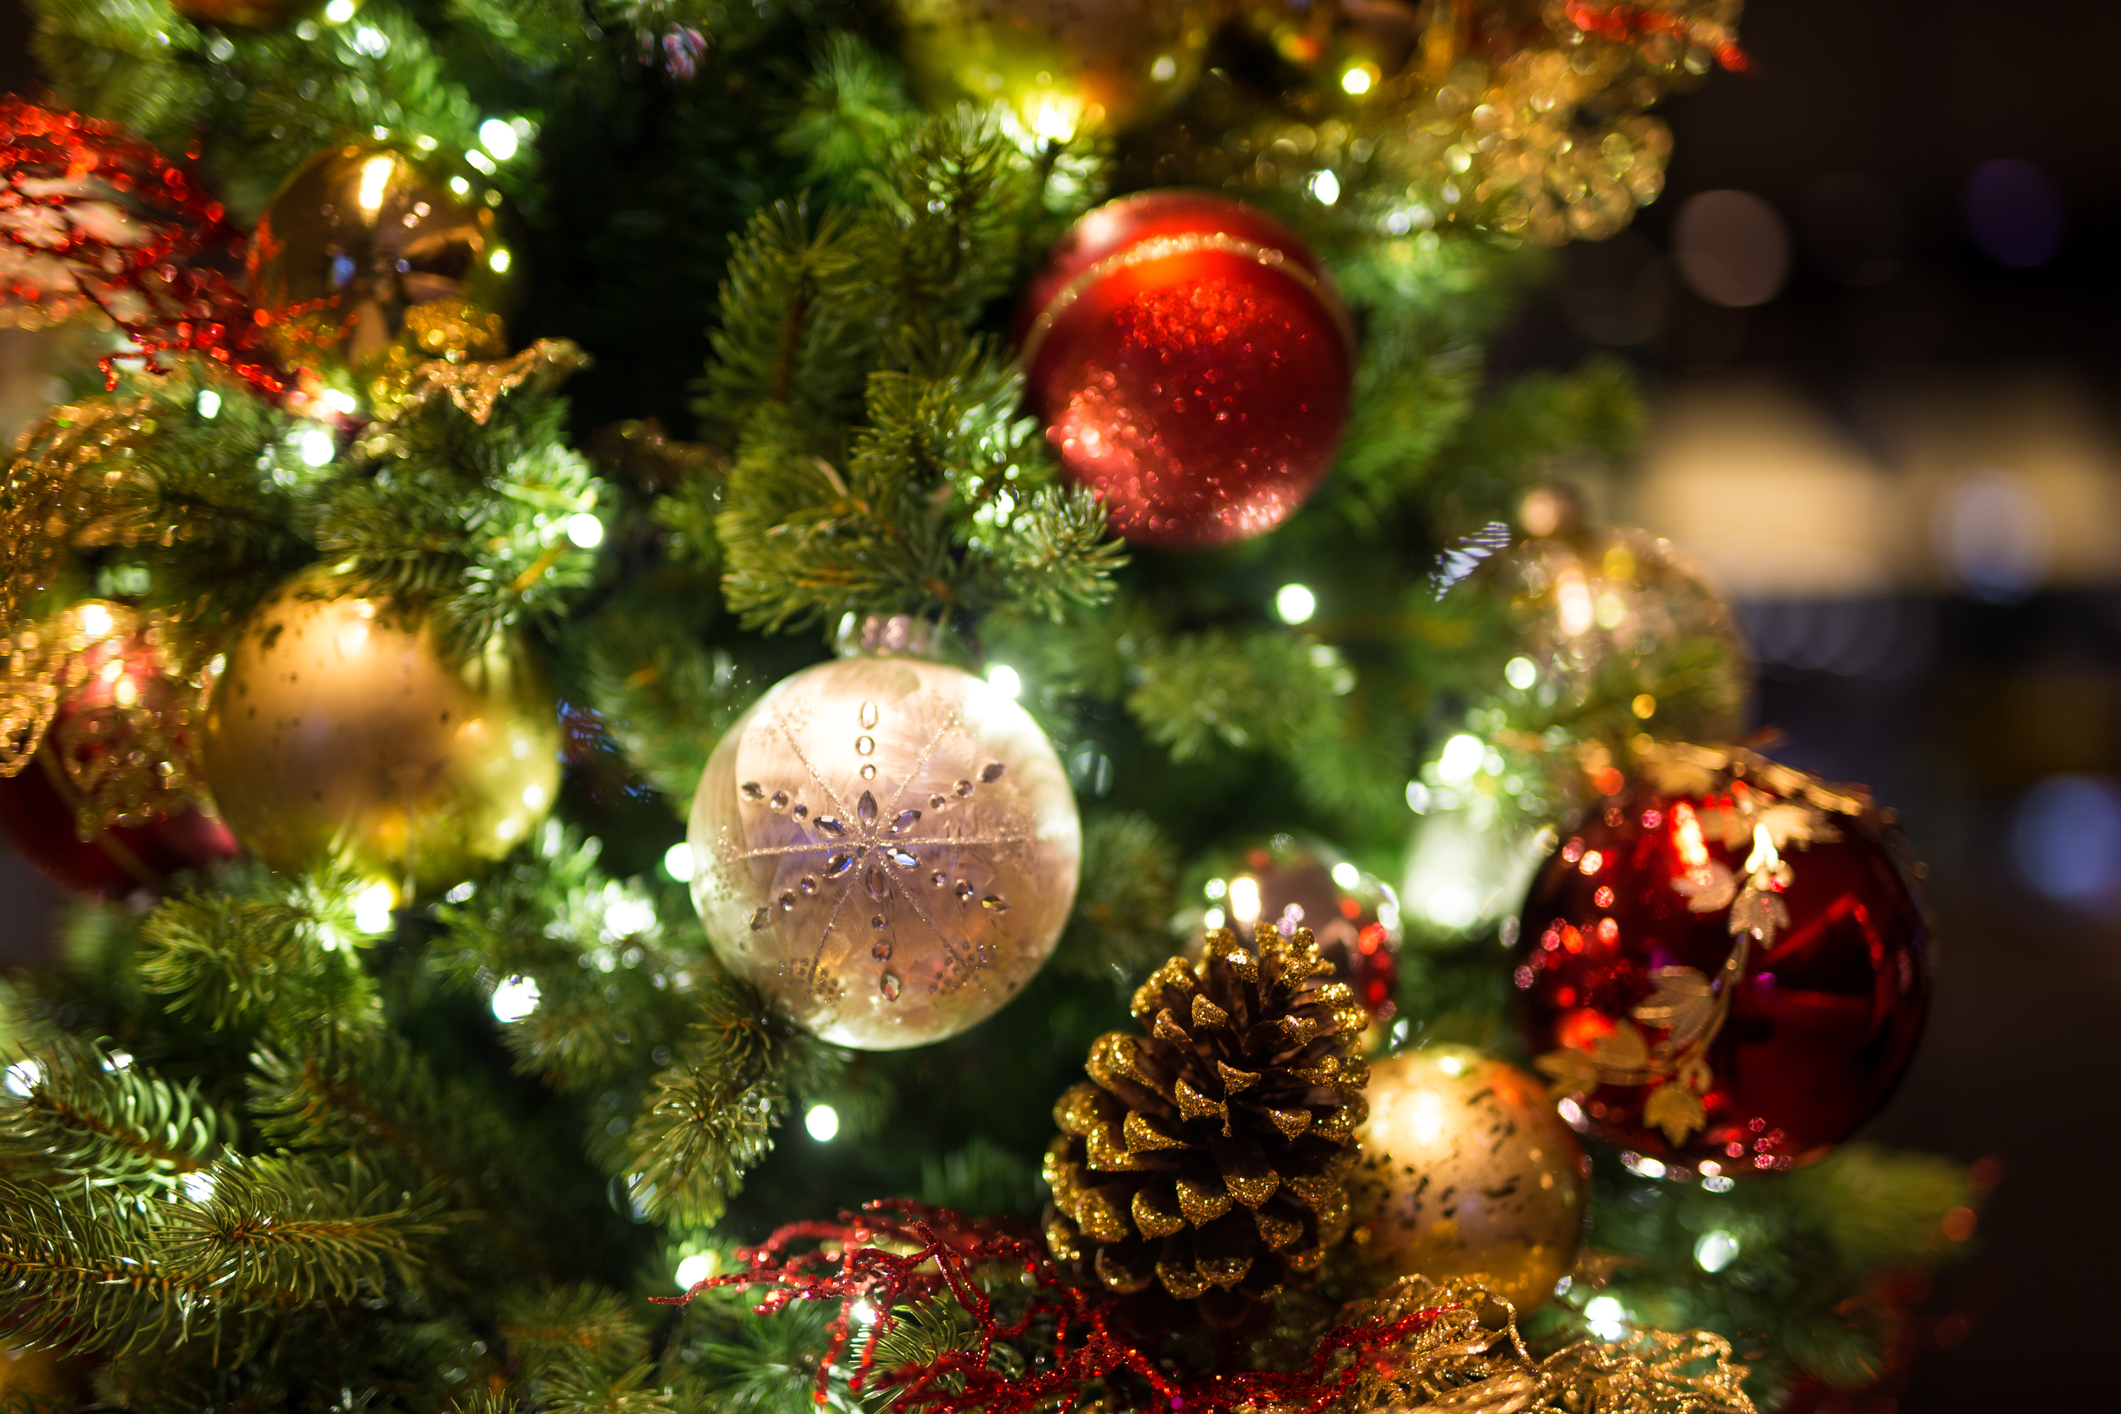 Đêm Giáng Sinh sẽ trở nên đặc biệt hơn bao giờ hết với hình ảnh người mua sắm đang tận hưởng truyền thống cuối cùng của mùa lễ này. Hãy cùng nhau thưởng thức không khí Noel truyền thống đầy sôi động bằng cách chuẩn bị những món quà tinh thần đầy tình yêu và ấm áp cho những người thân yêu của bạn!